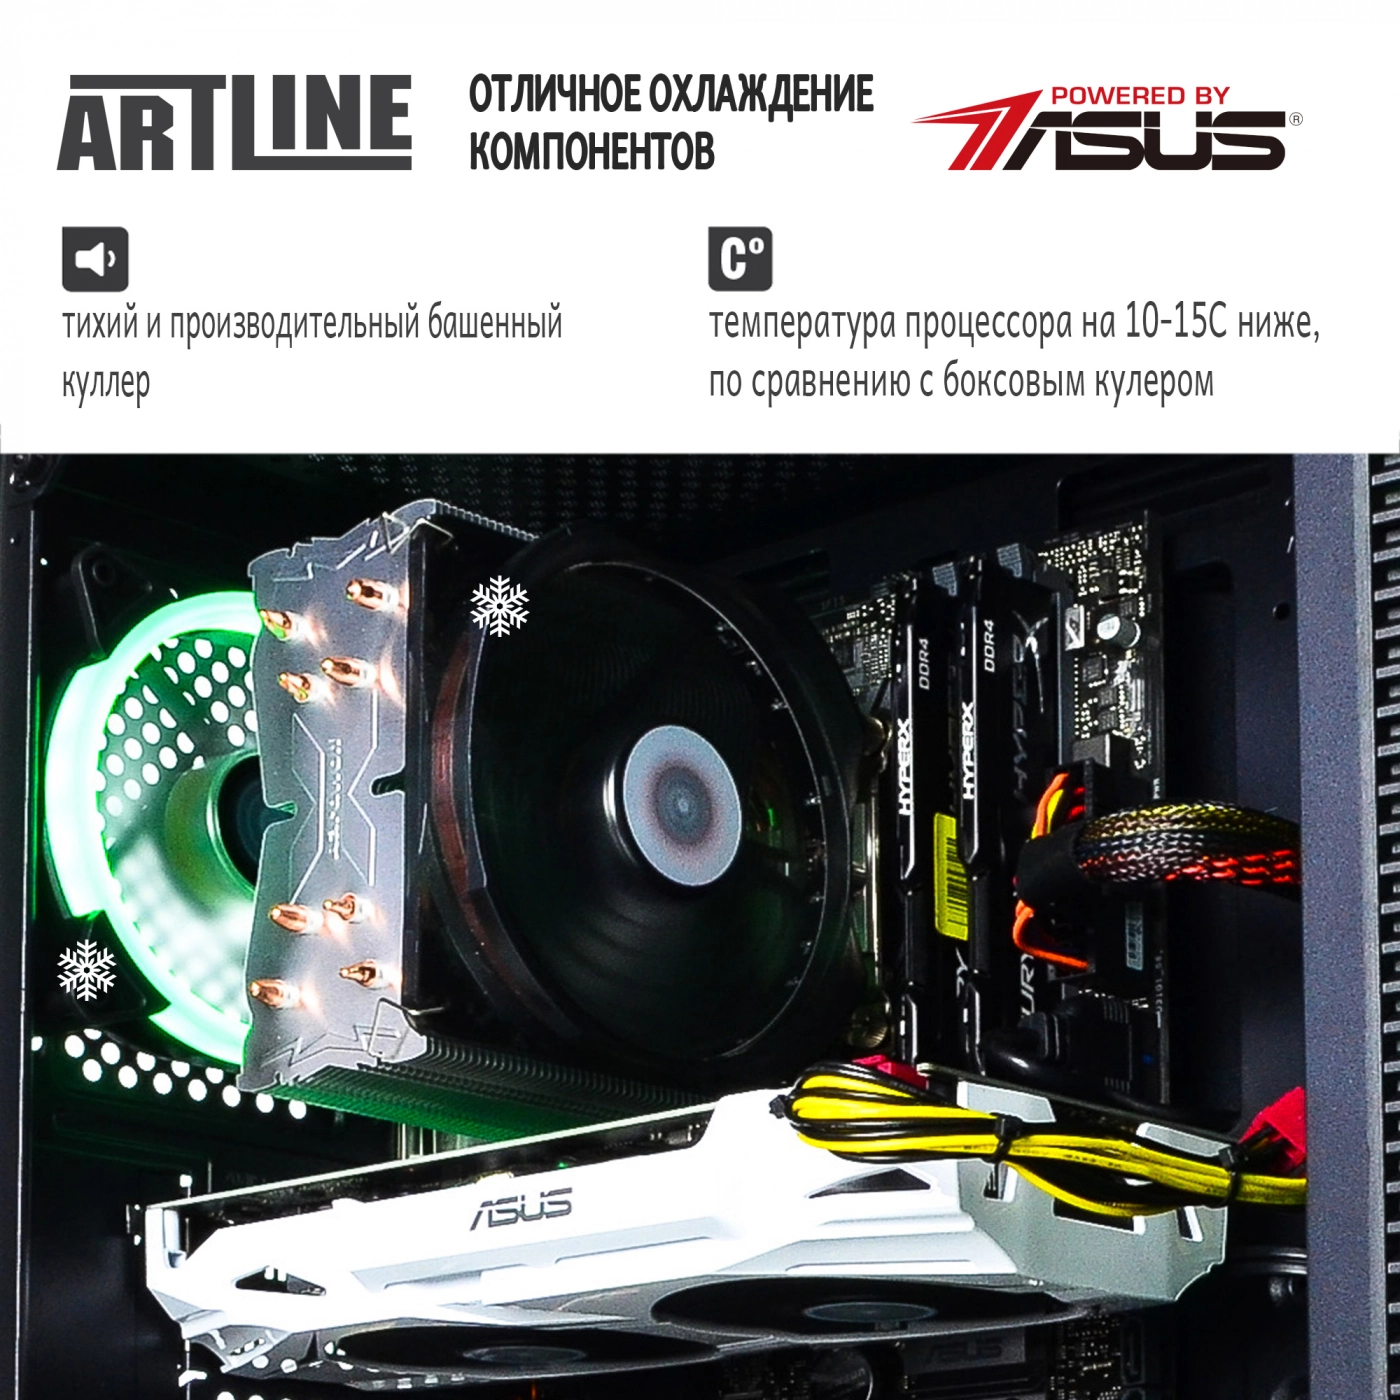 Купить Компьютер ARTLINE Gaming X75v12 - фото 3